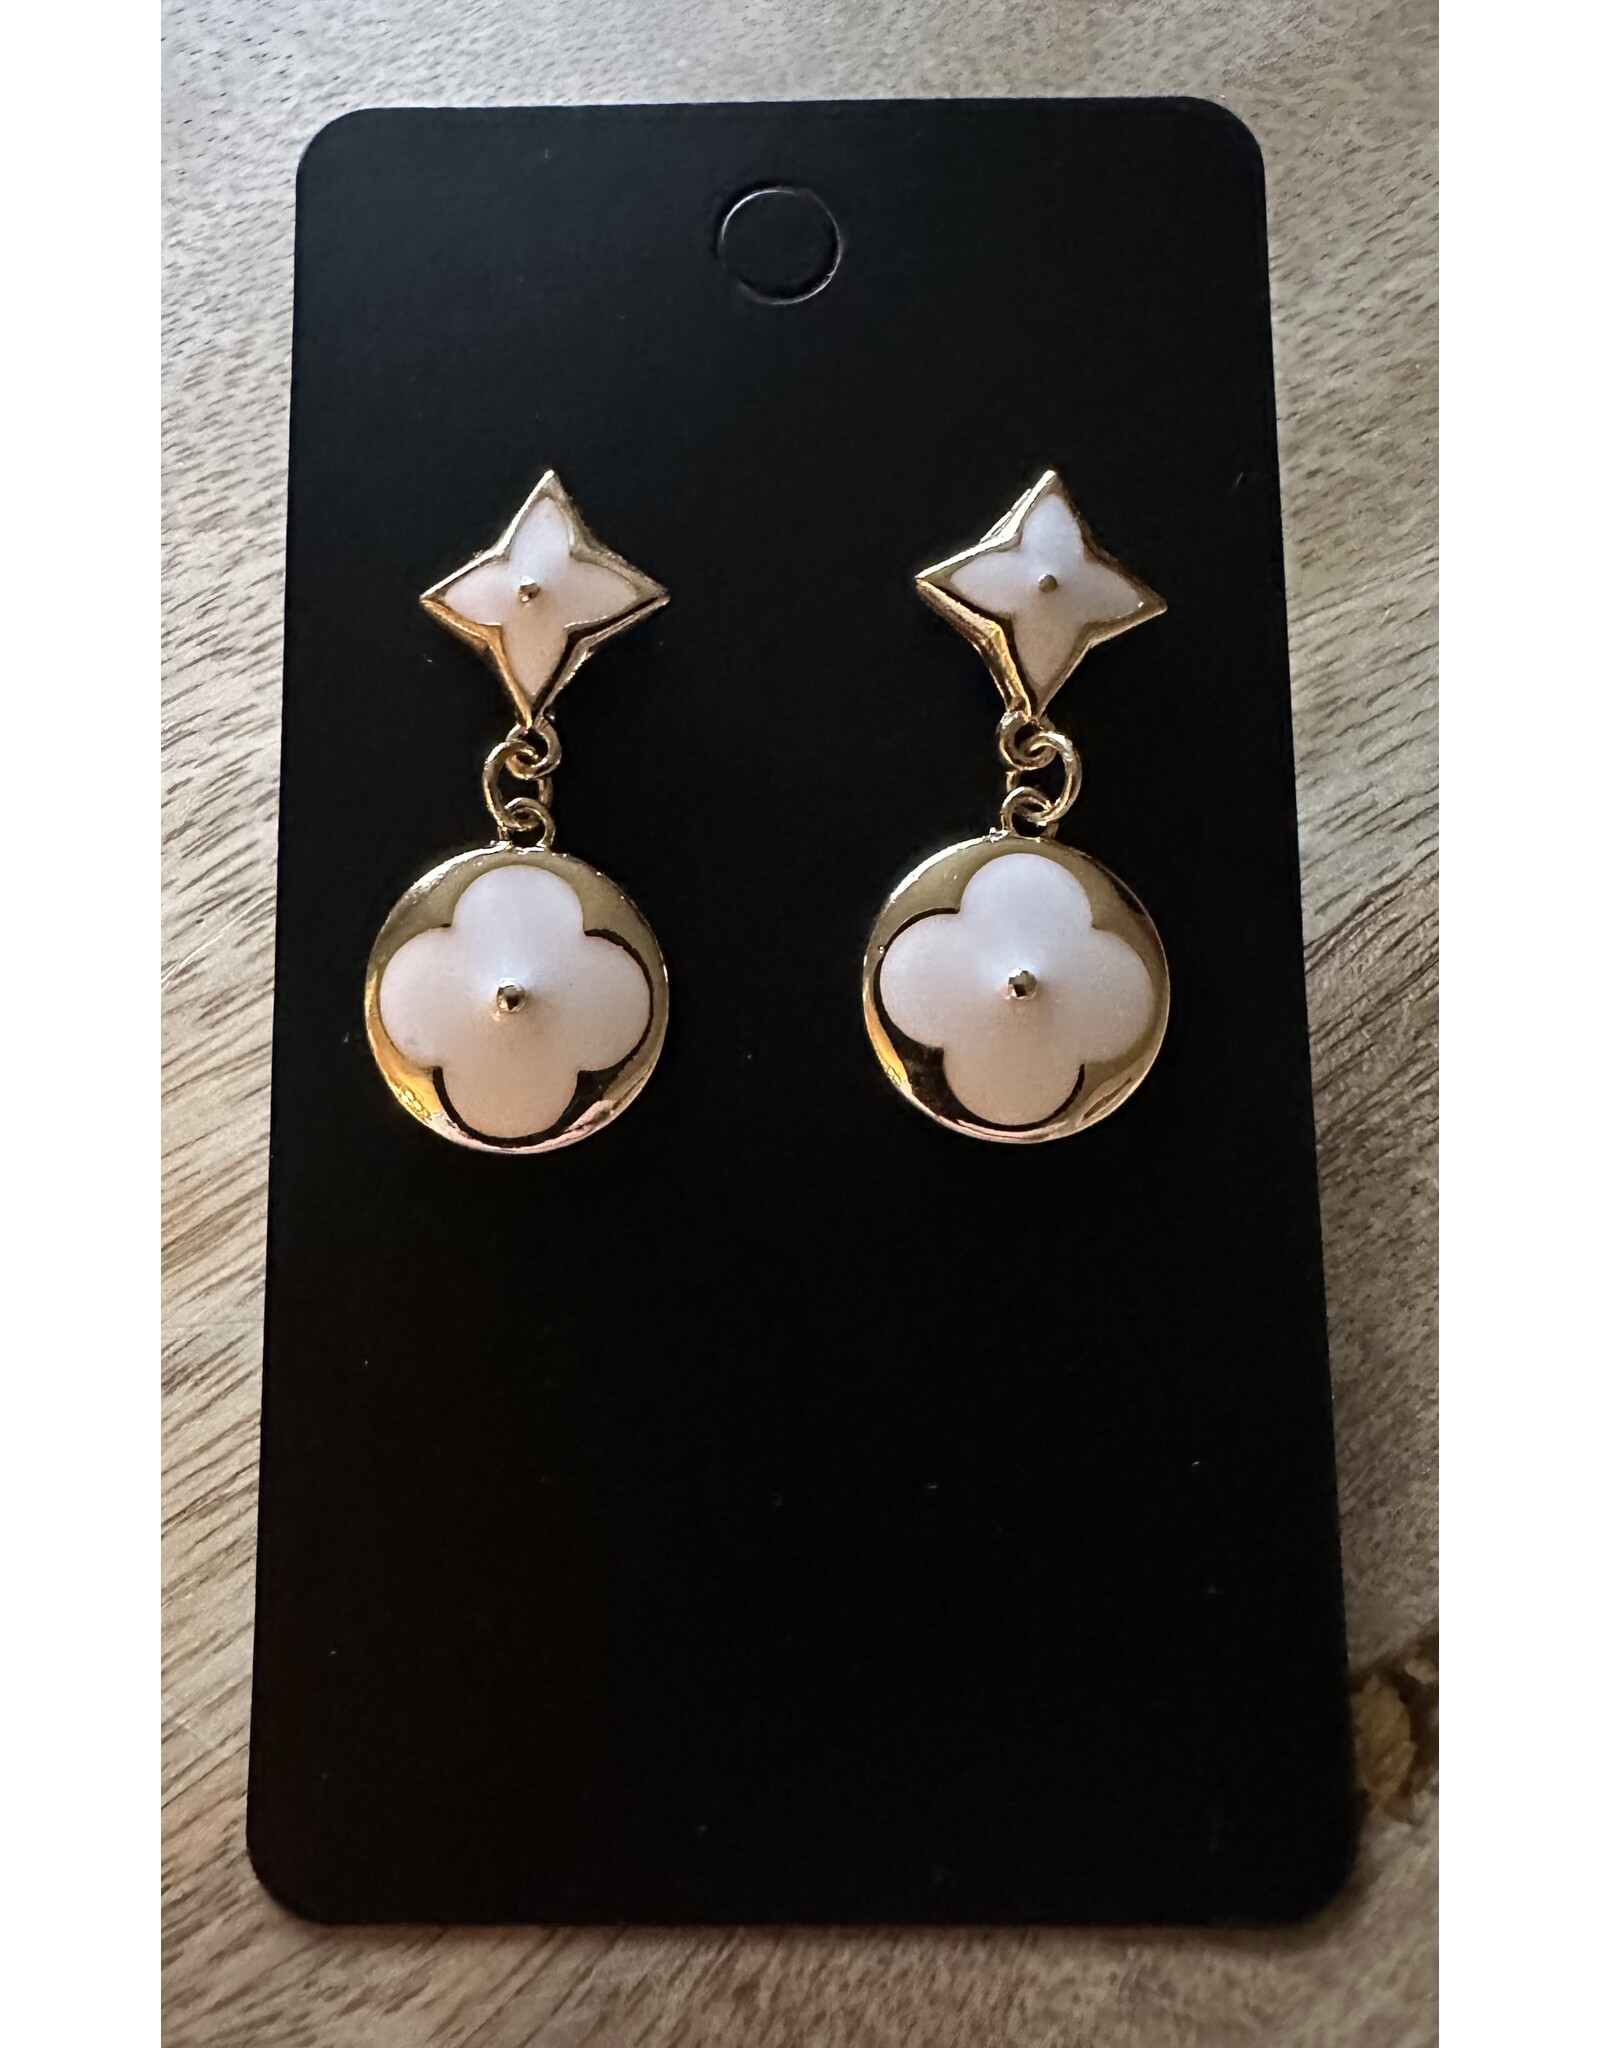 Designer look drop earrings